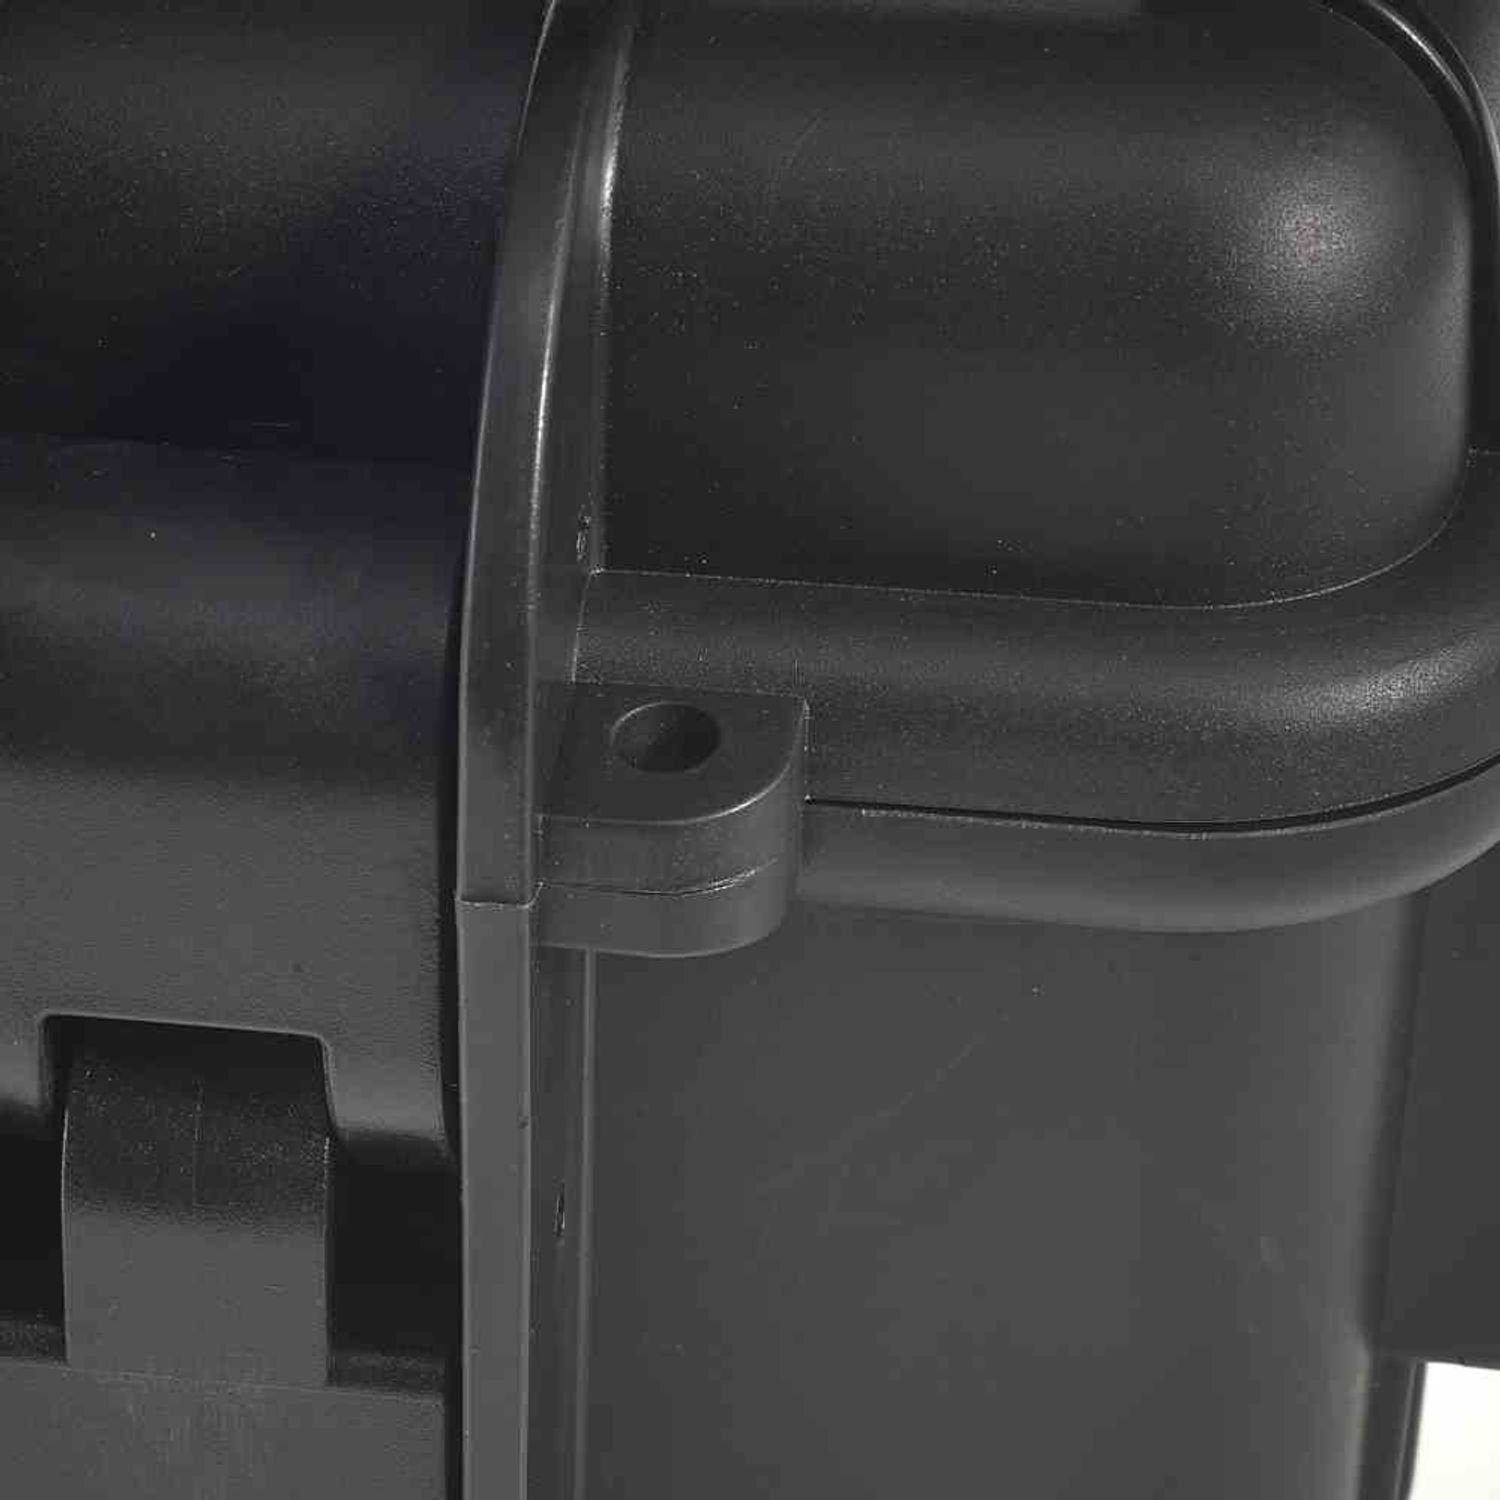 Werkzeugkoffer B&W Pockets mit Werkzeug-Koffer schwarz International JET5000